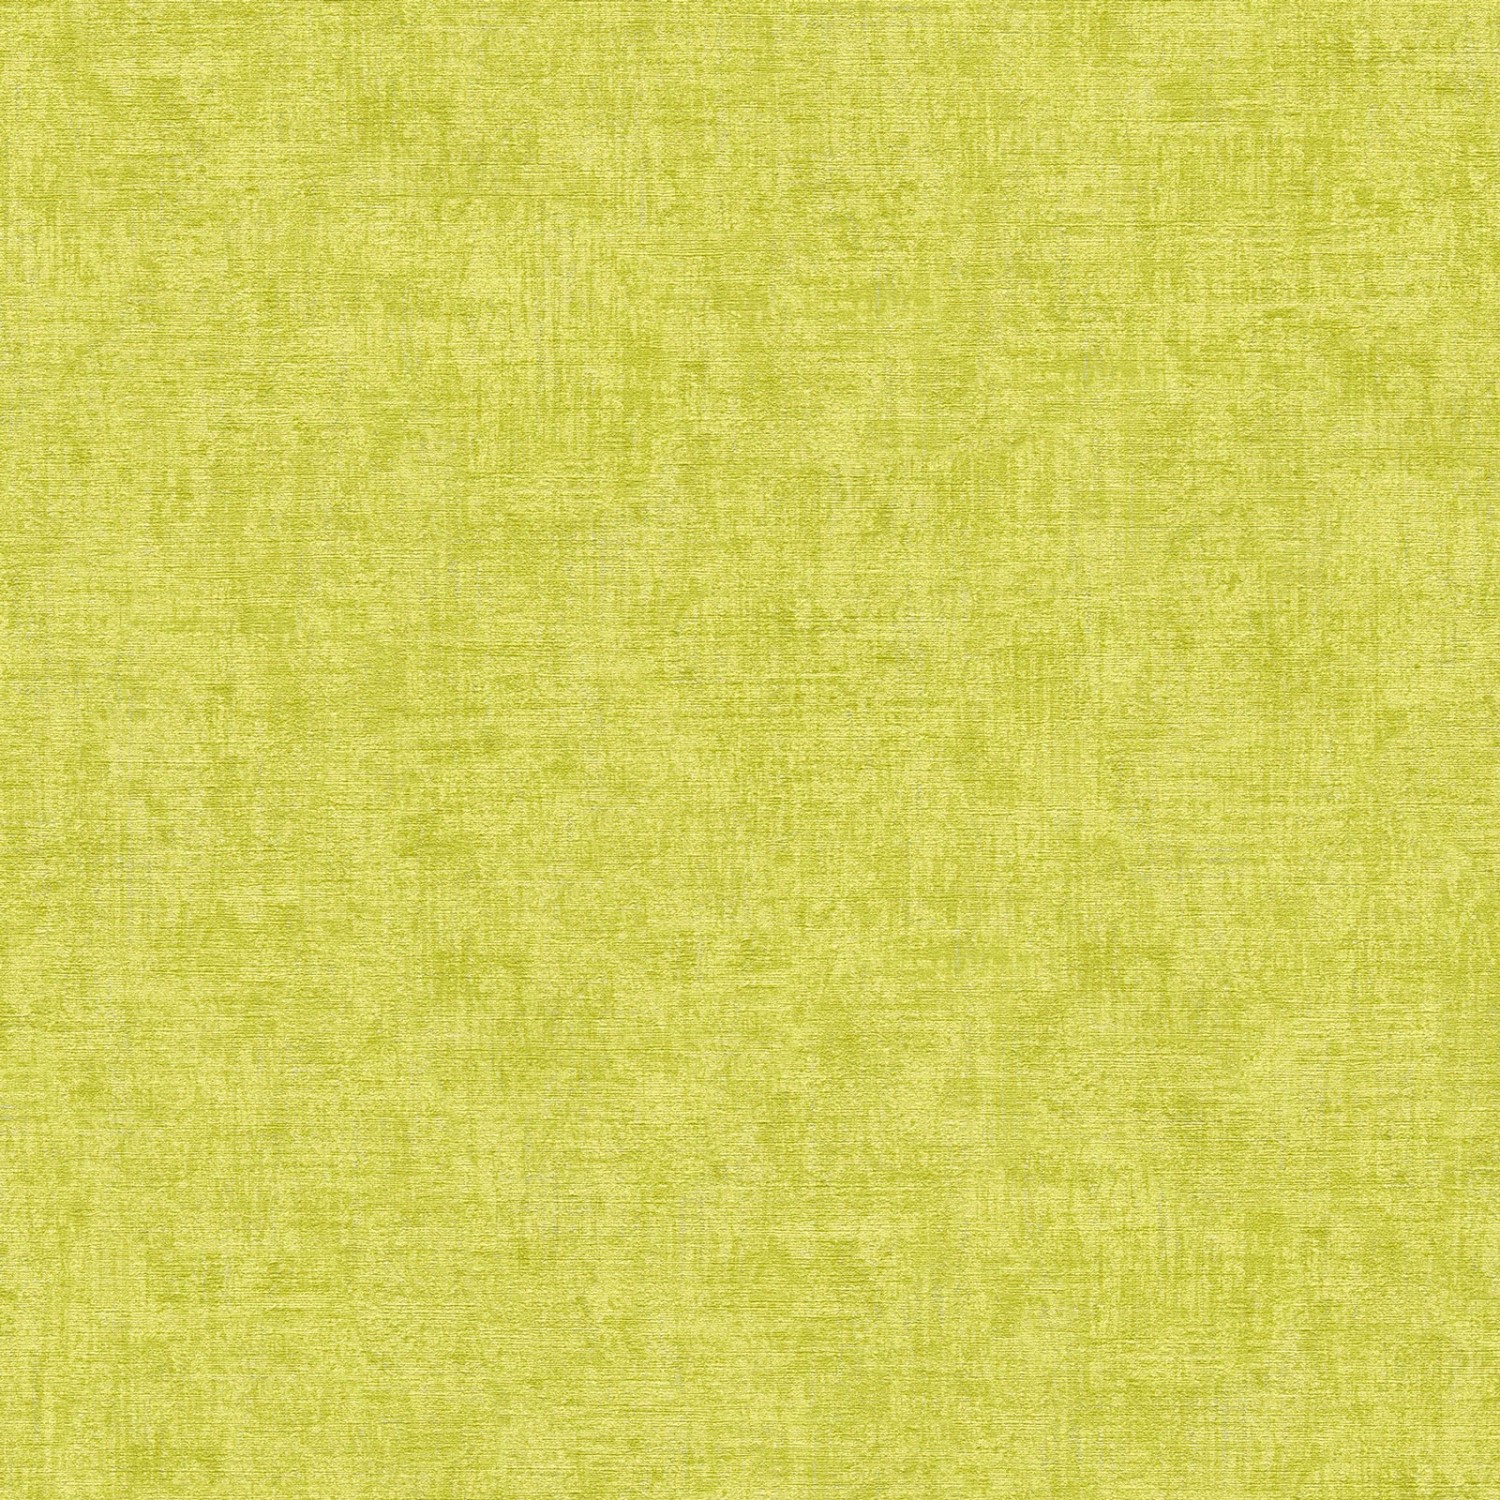 Bricoflor Uni Tapete in Gelb Grün Leinenoptik Vinyl Vliestapete Abwaschbar Wohnzimmer und Kinderzimmer Wandtapete in Textiloptik Einfarbig von Bricoflor